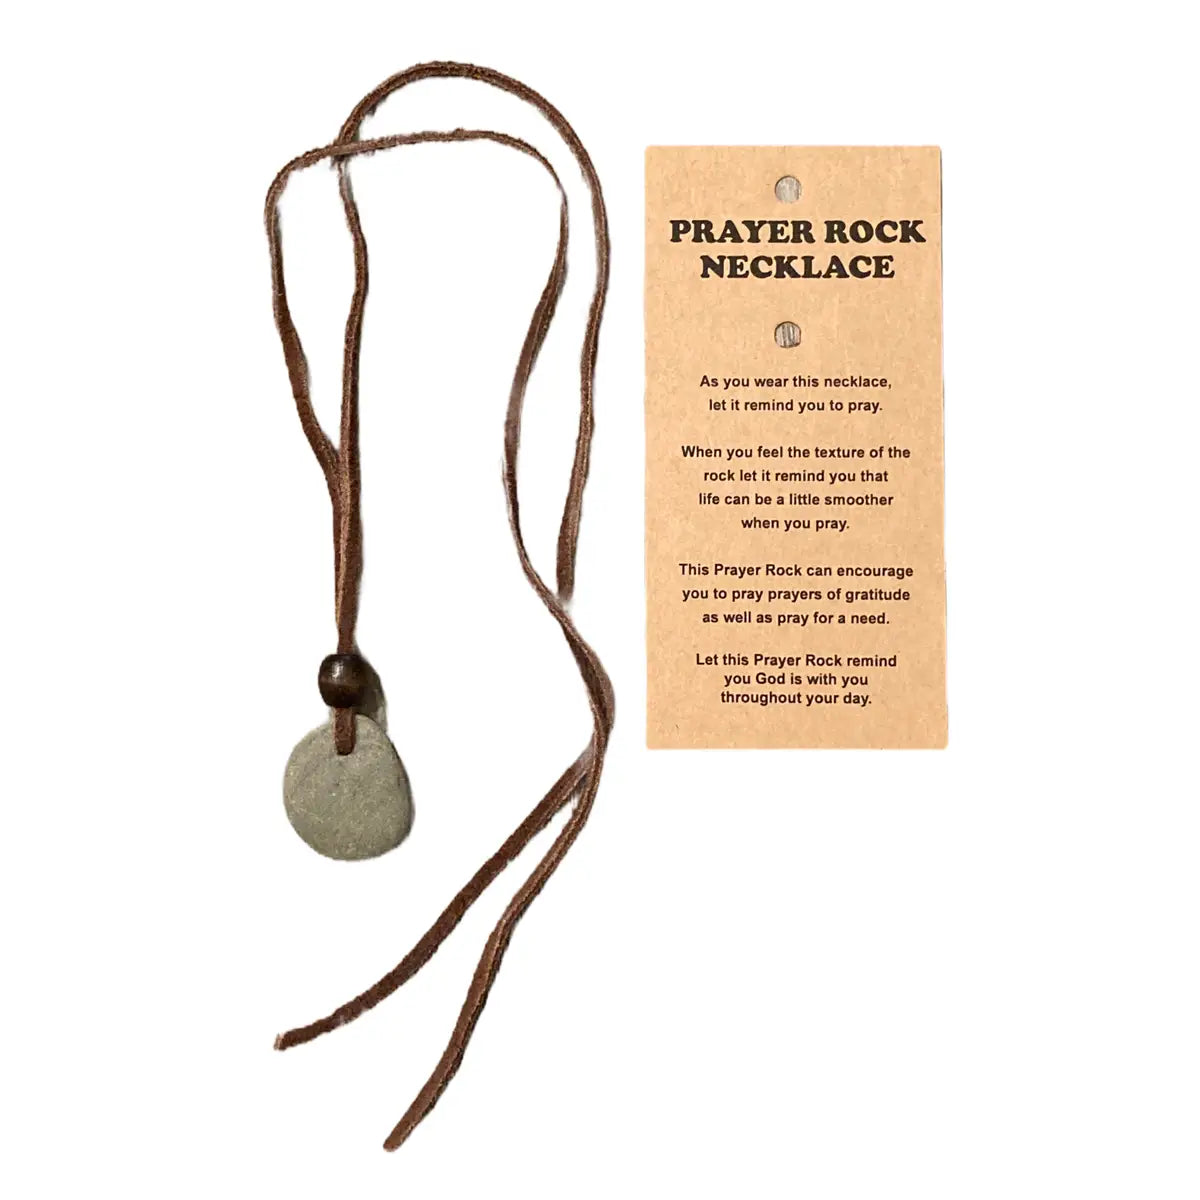 Prayer Rock Necklace